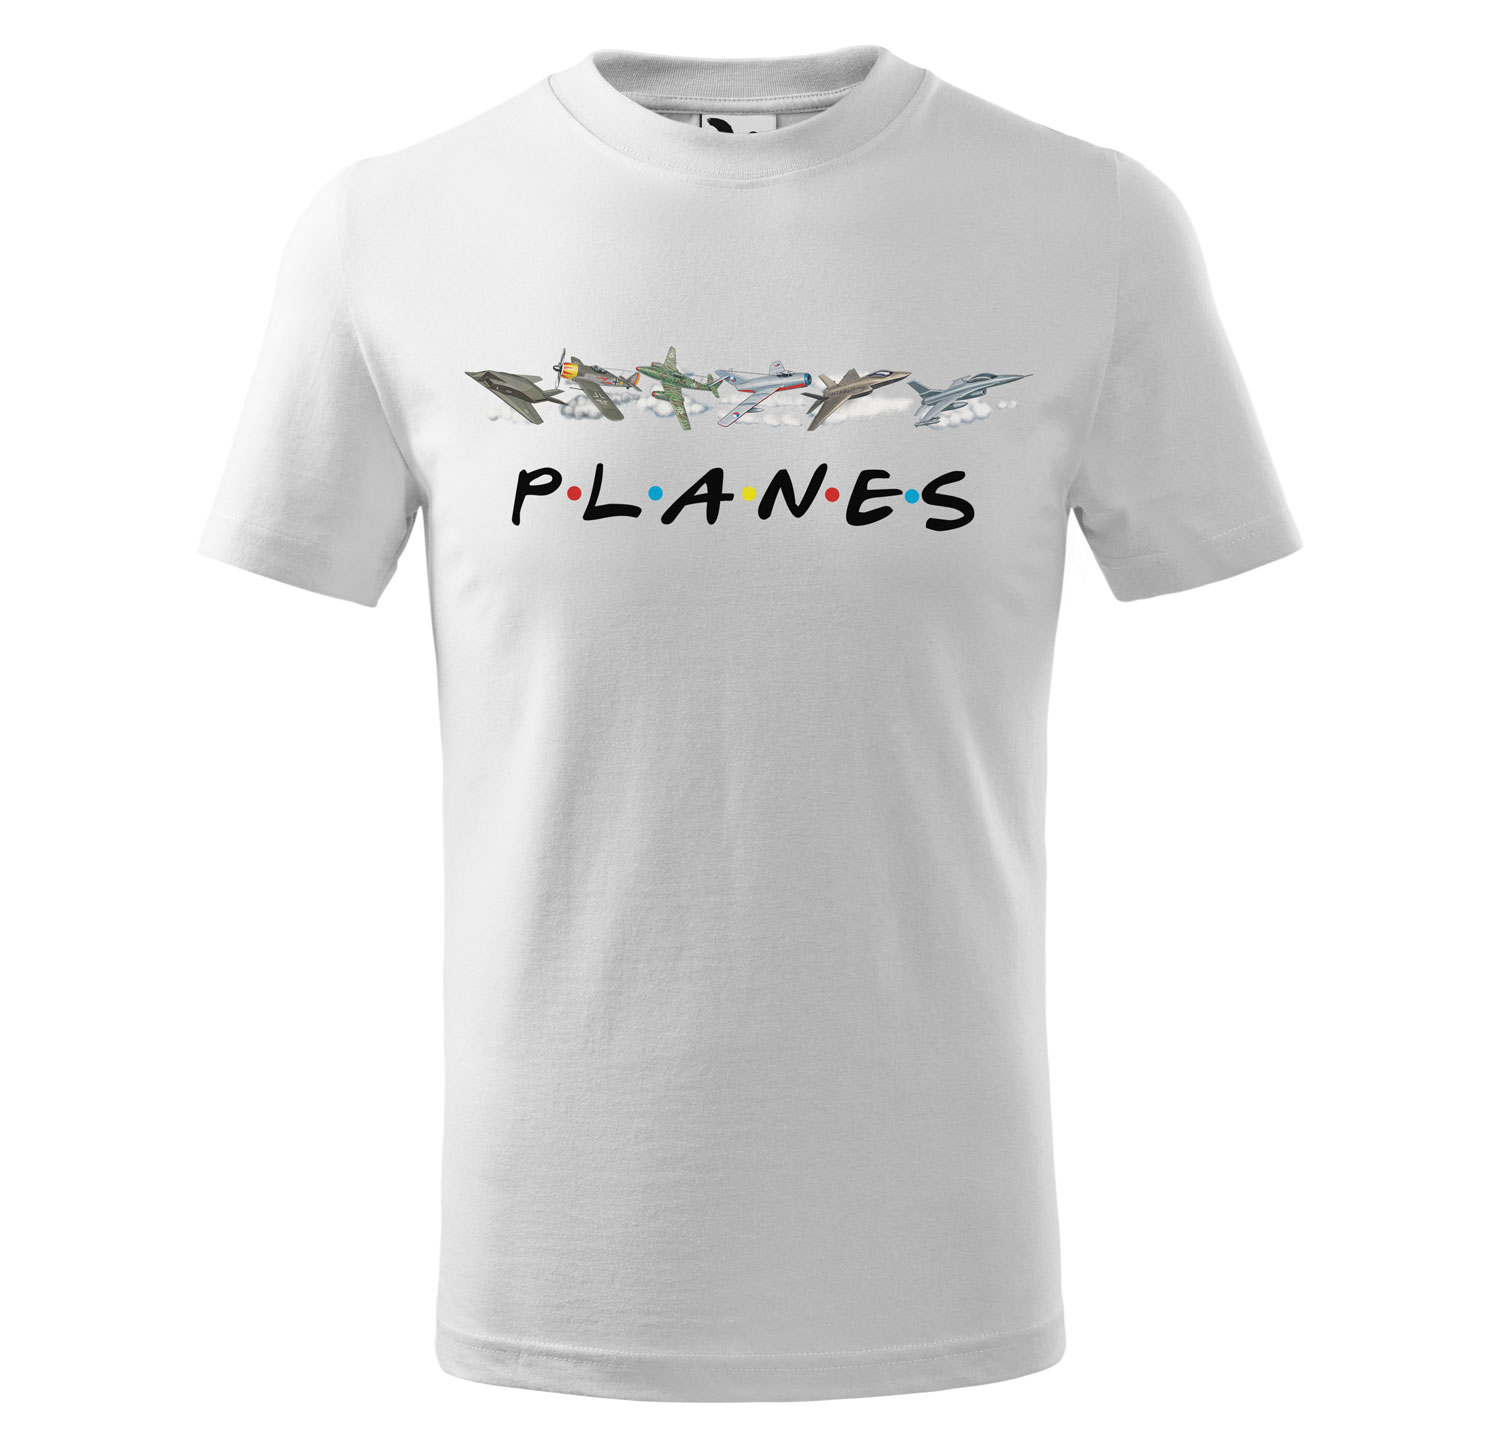 Tričko Planes - dětské (Velikost: 122, Barva trička: Bílá)